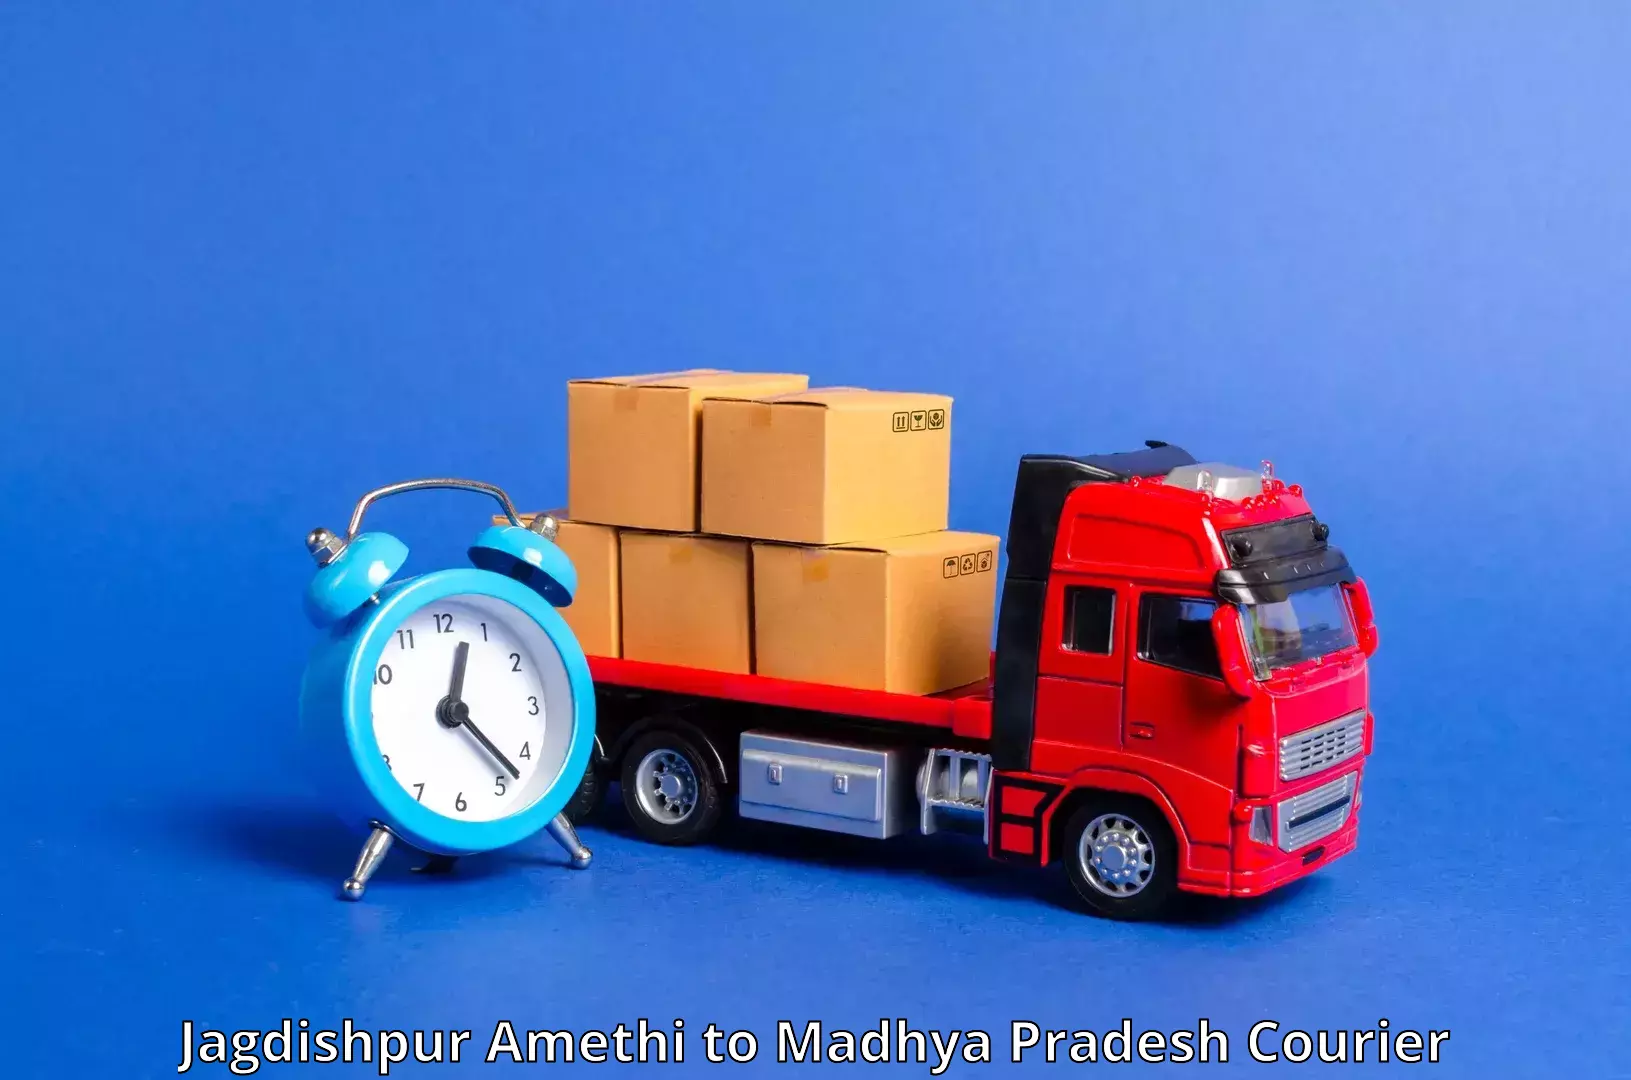 Digital courier platforms Jagdishpur Amethi to Garh Rewa